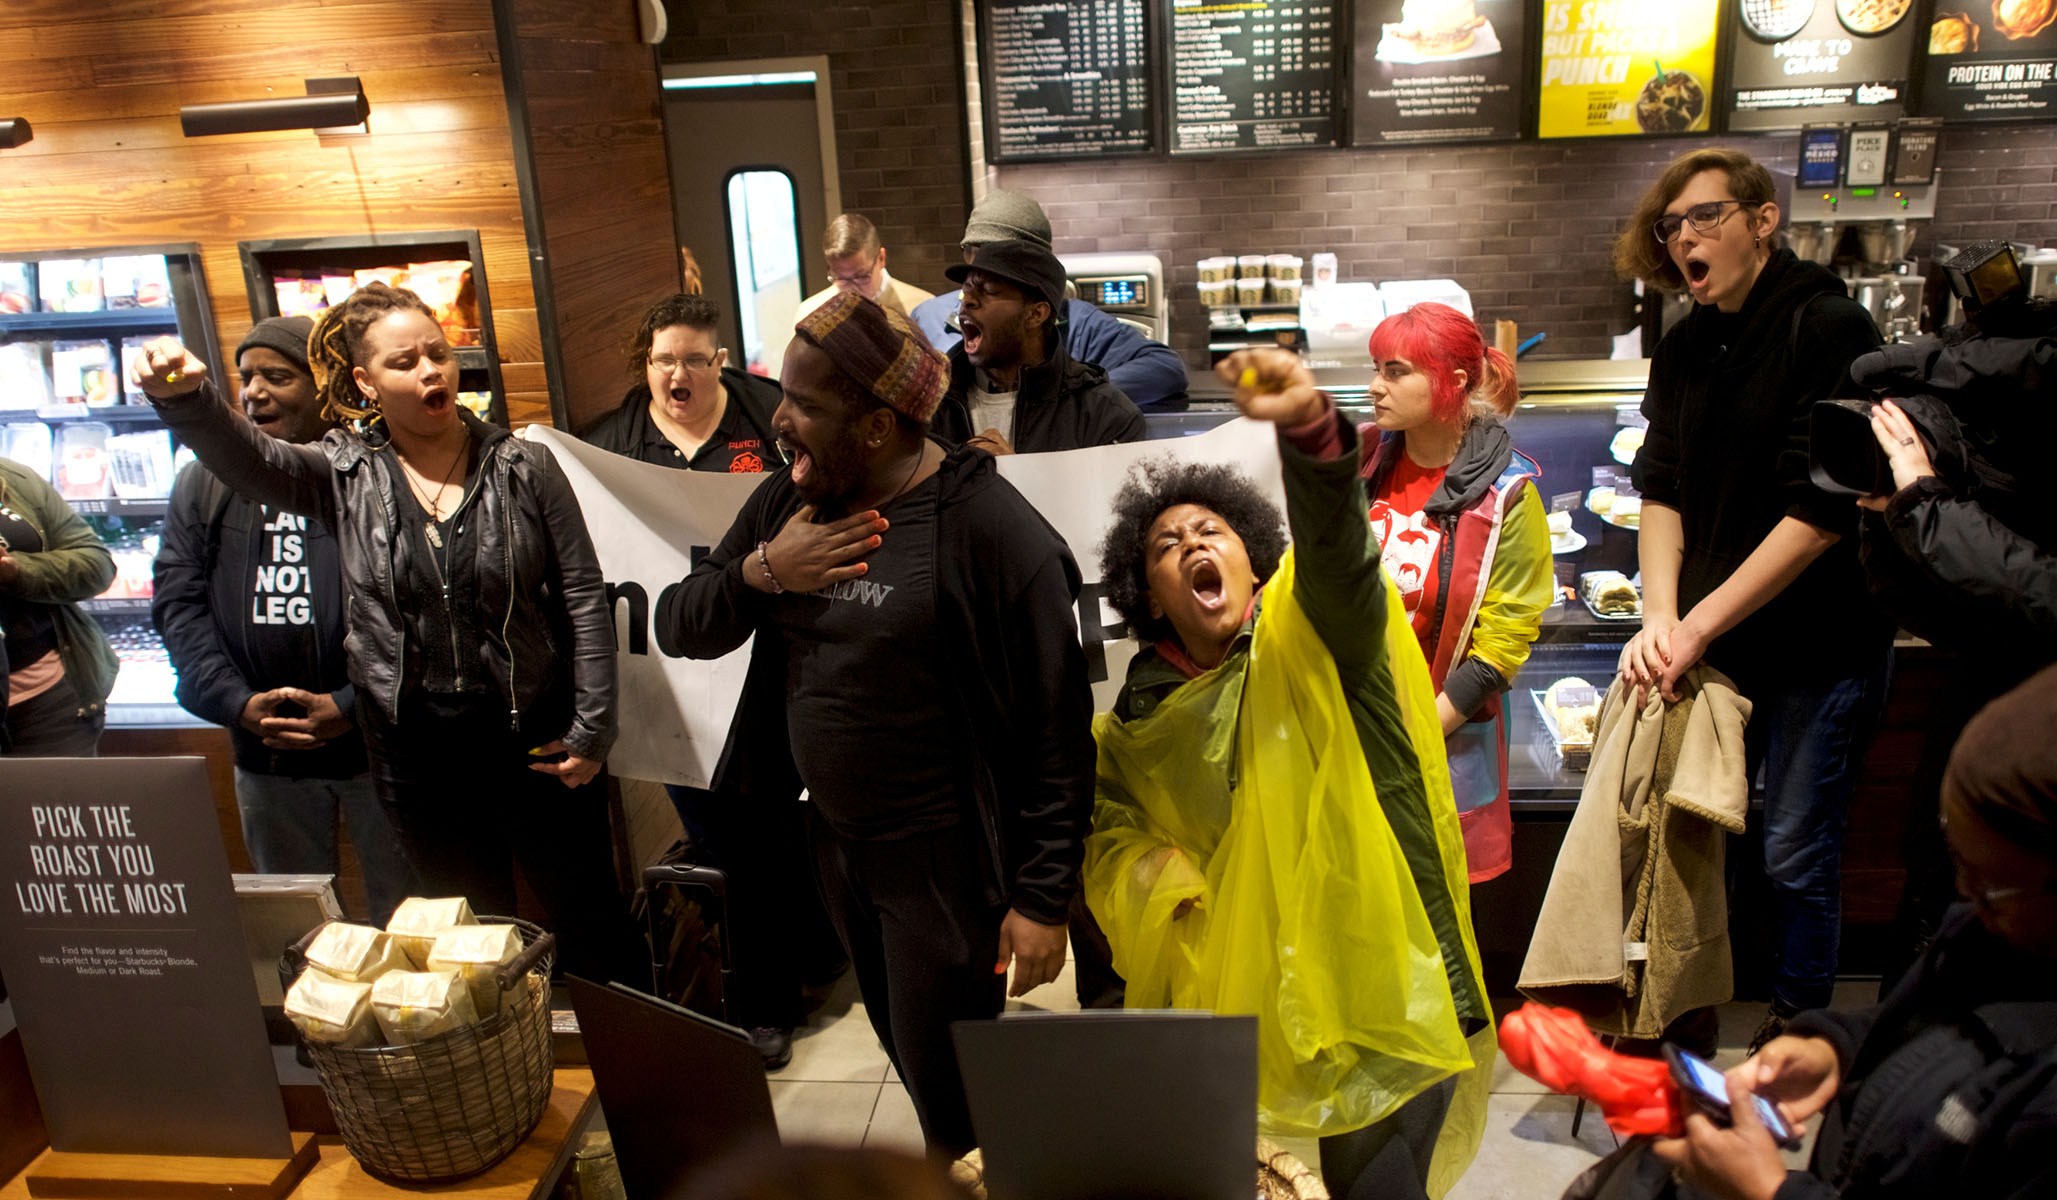 Protestors demonstrate inside a Center City Starbucks, where two black men were arrested, in Philadelphia